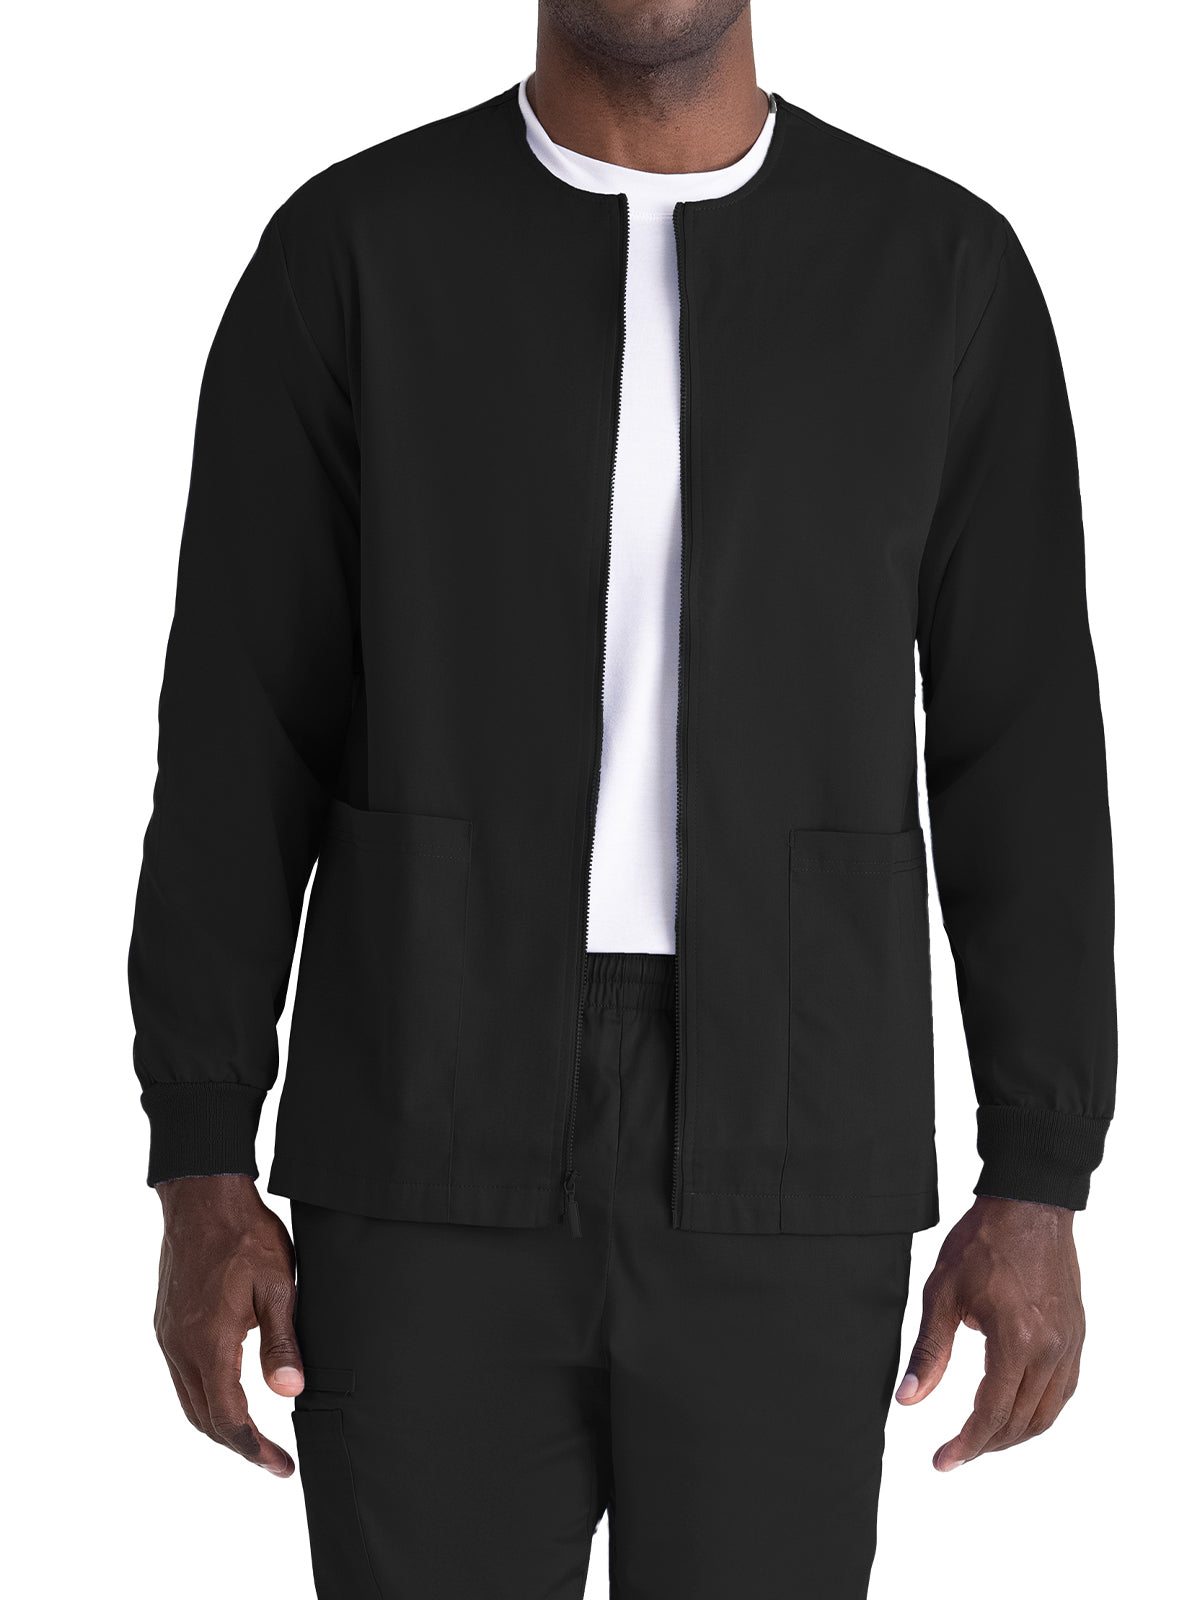 Unisex Full-Zip Front Valor Warm Up Scrub Jacket